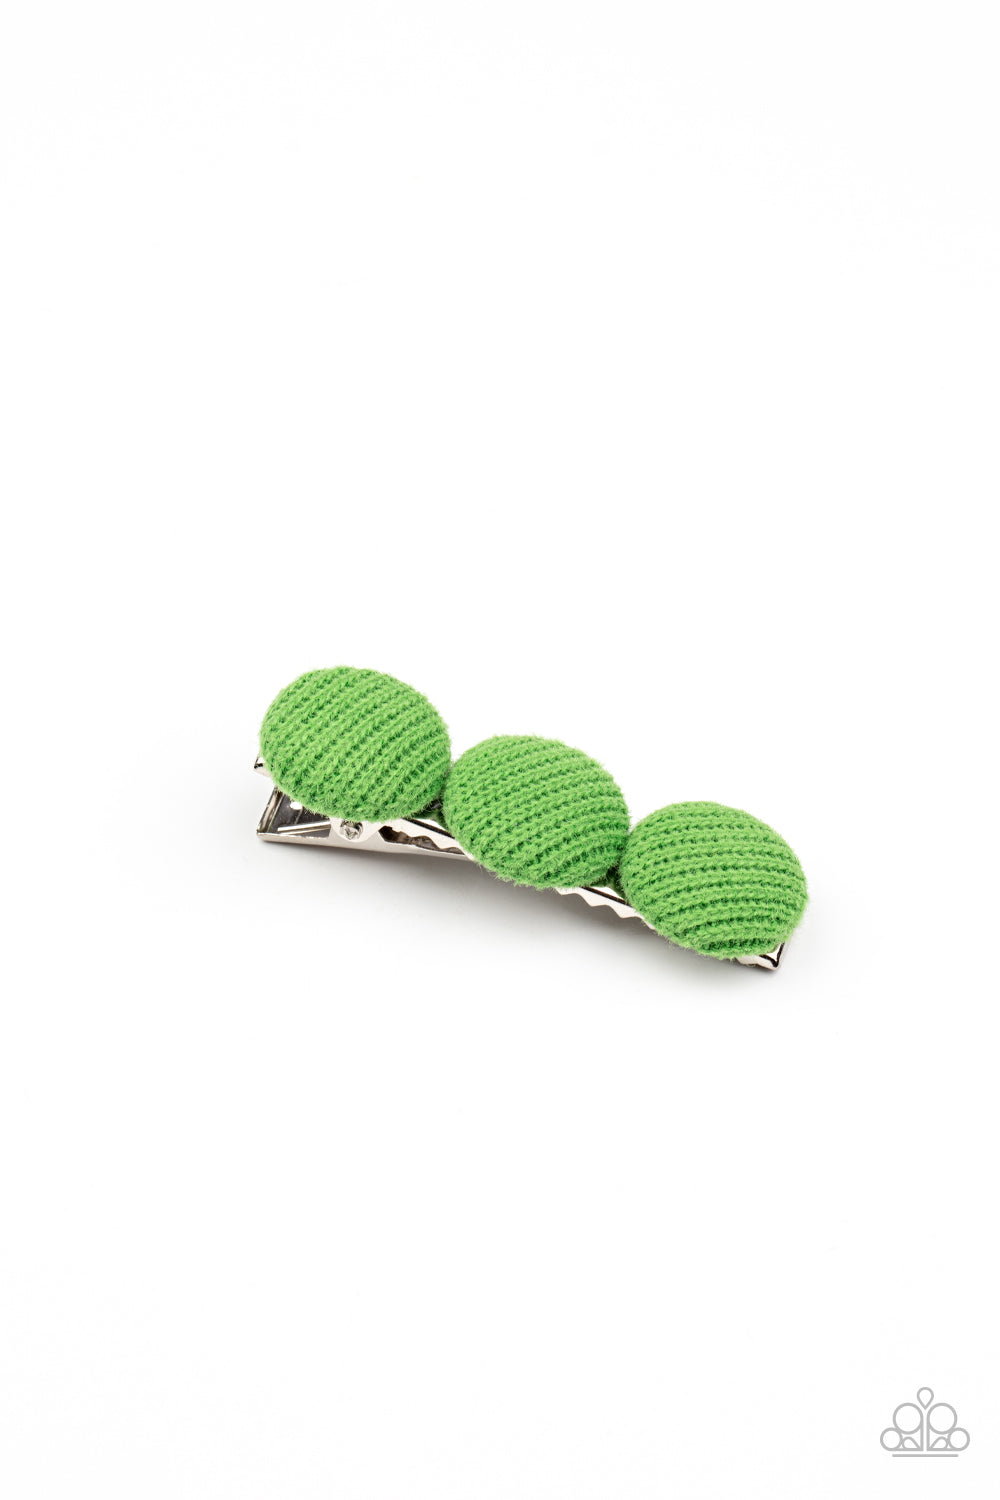 Cute as a Button - Green hair accessories